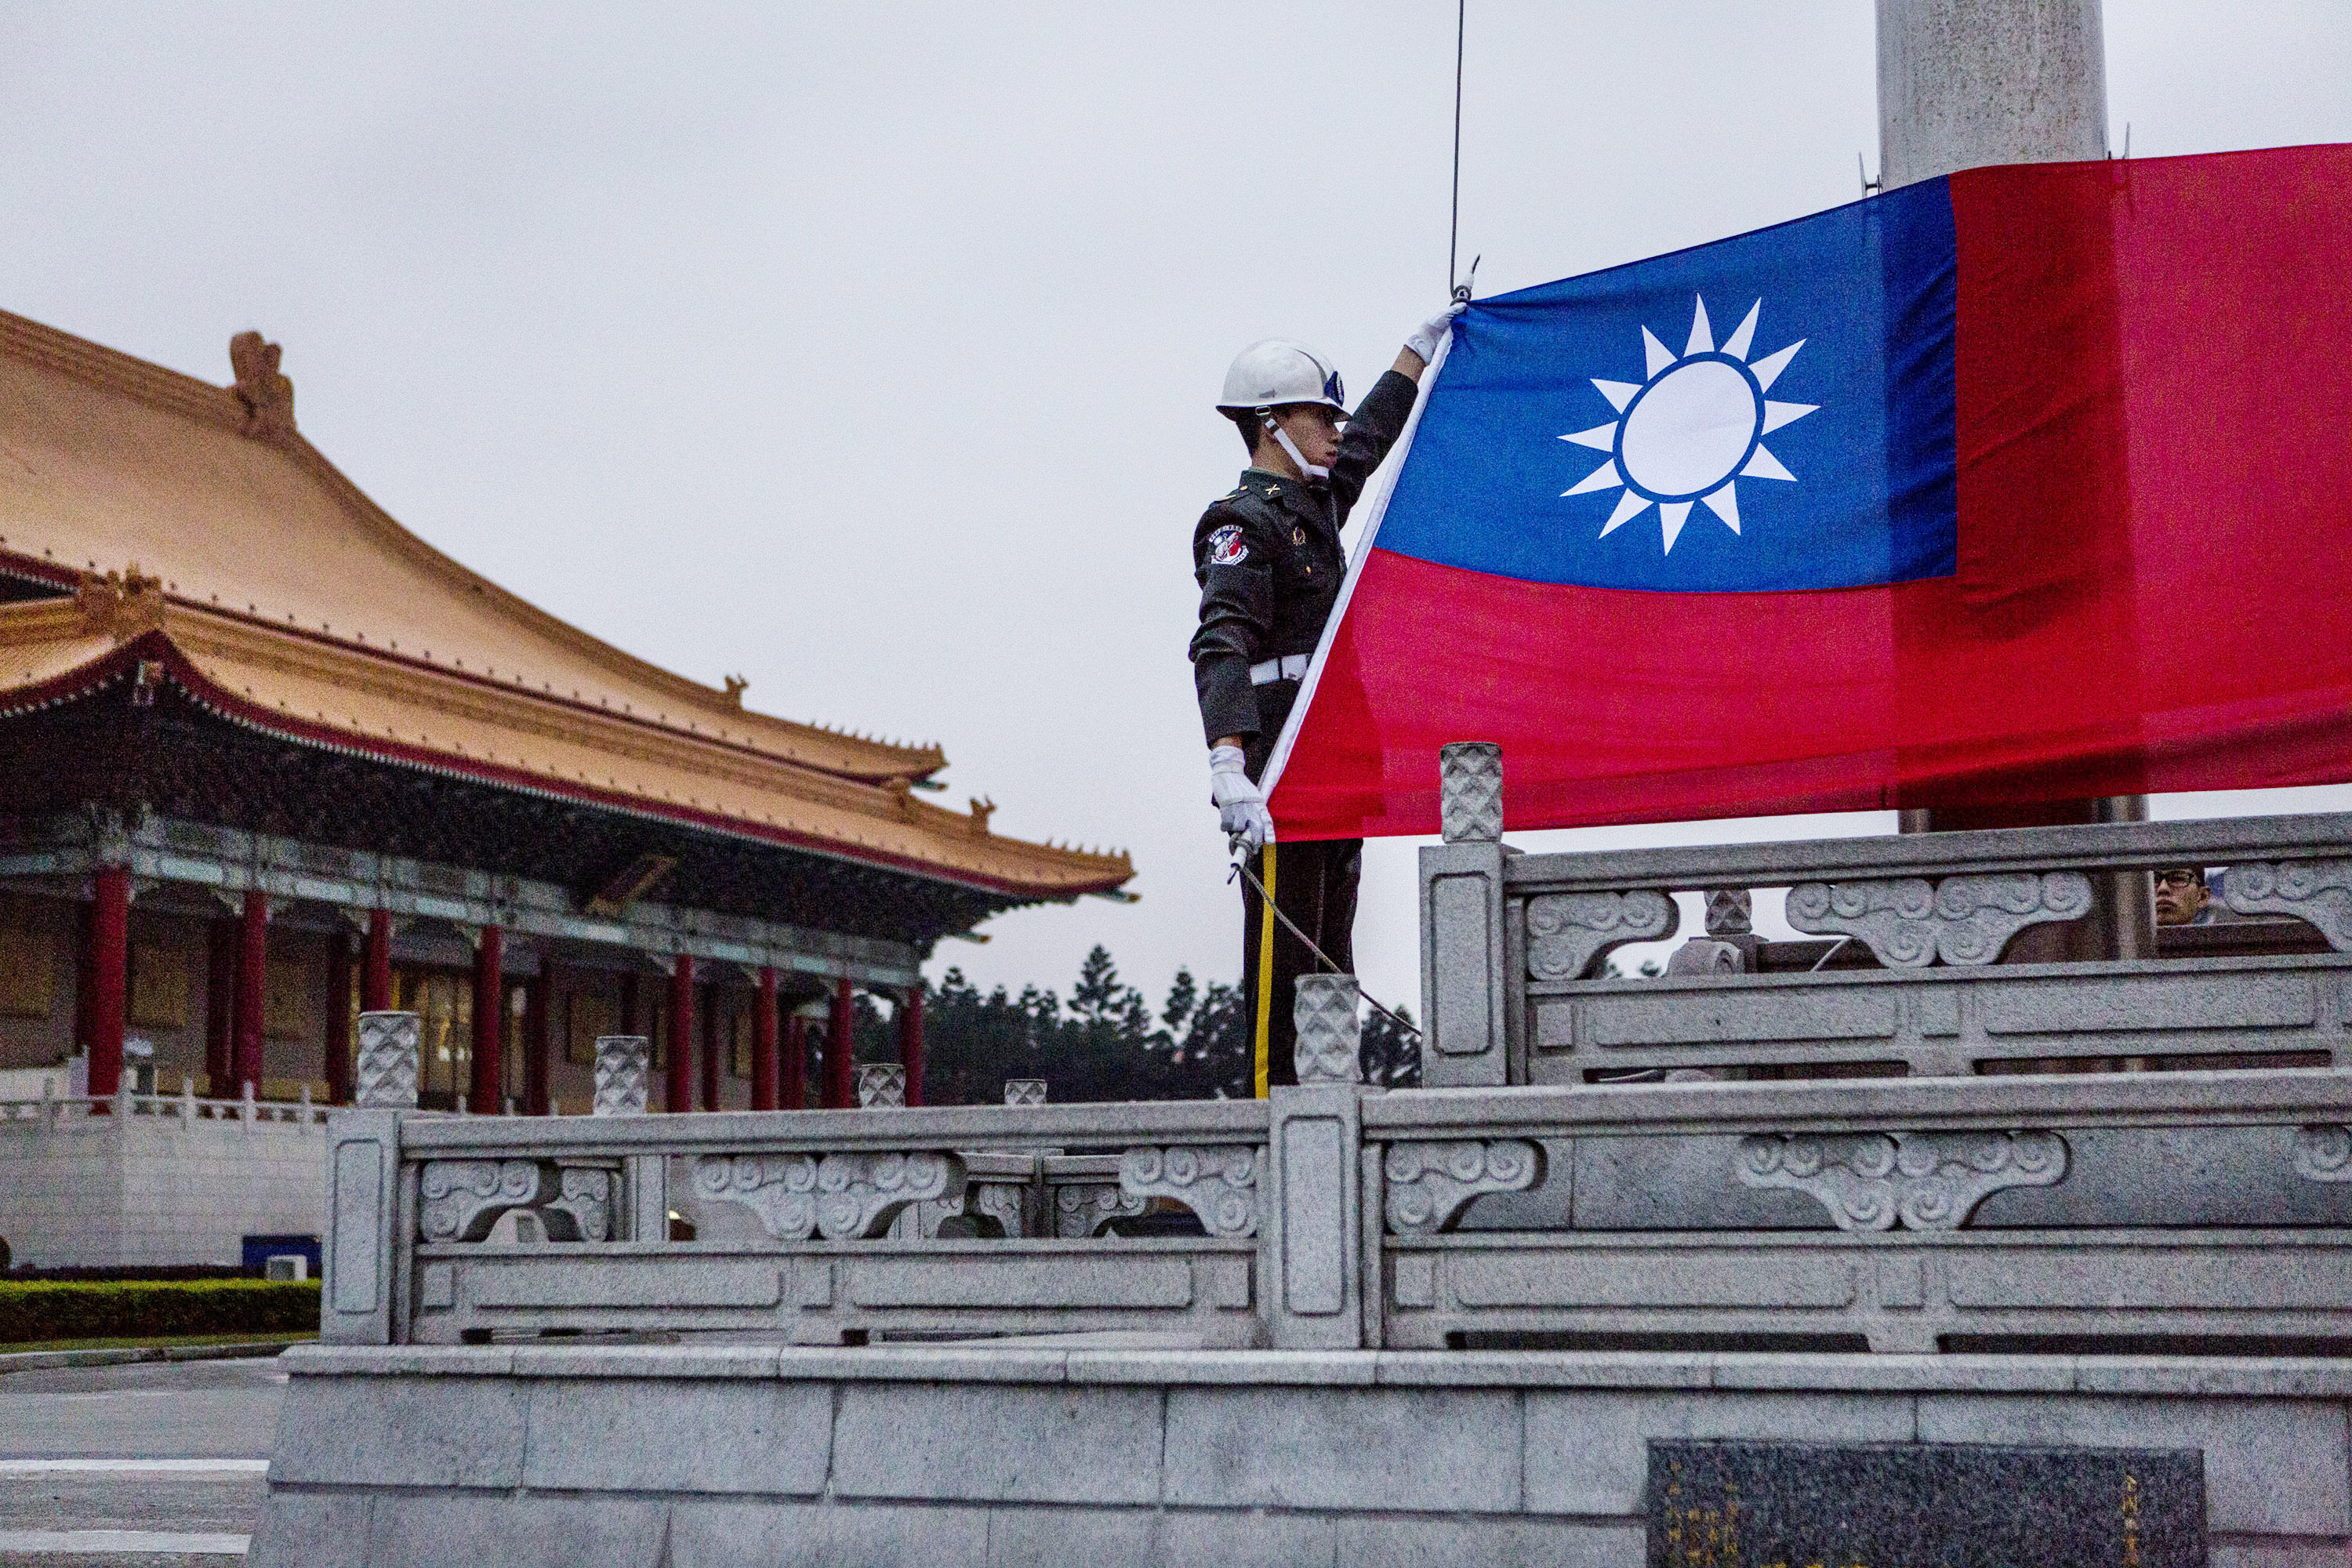 Тайвань на китайском. Флаг Китая Гоминьдан. Флаг Тайваня флаг Китая. Китайская Республика Тайвань. Флаг китайской Республики Гоминьдан.